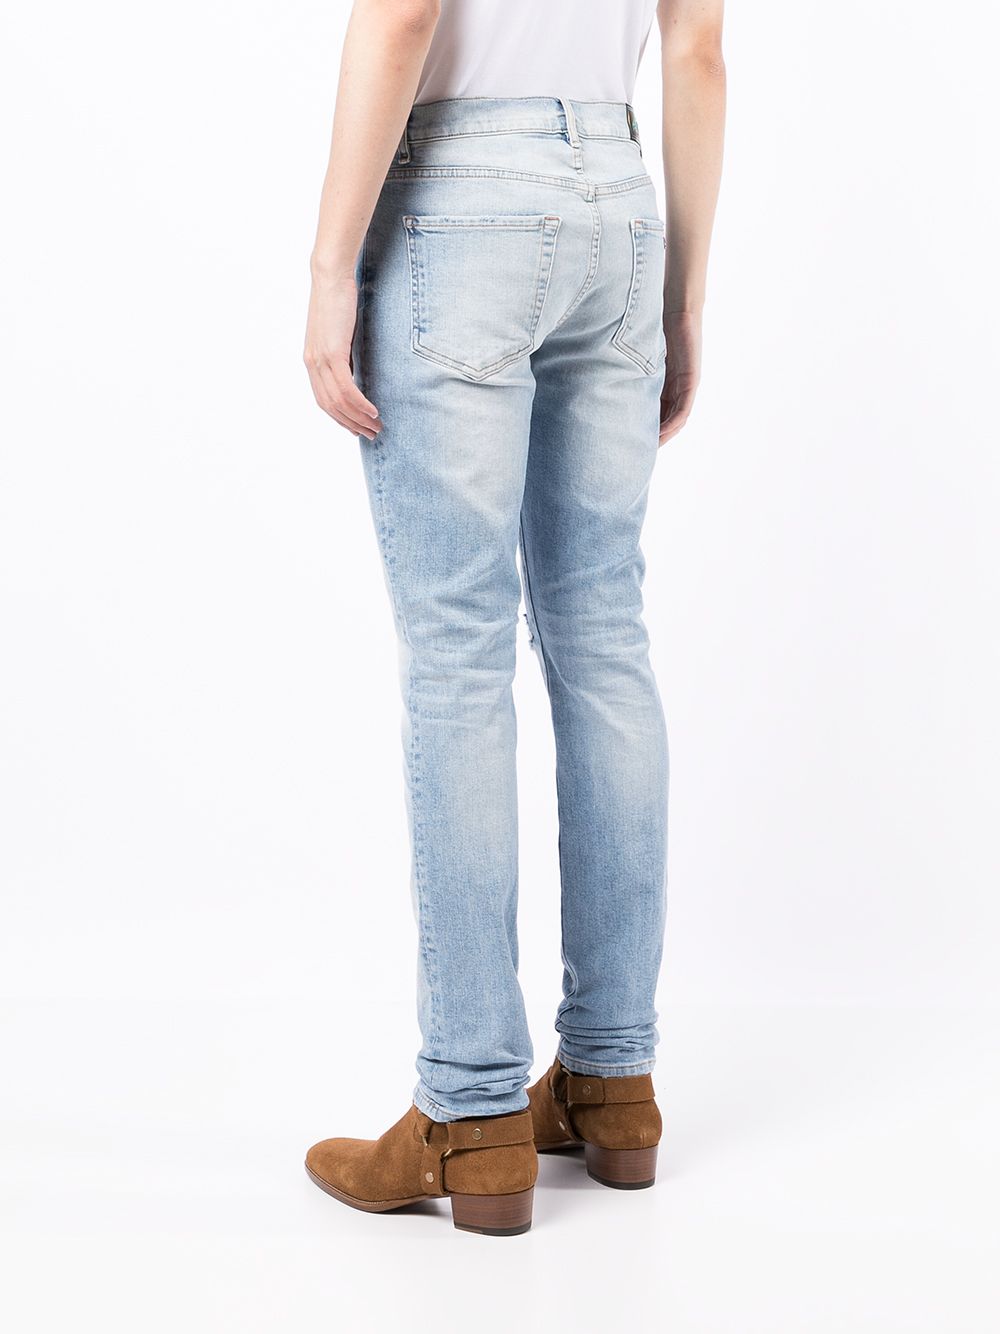 фото Bossi sportswear джинсы скинни с заниженной талией